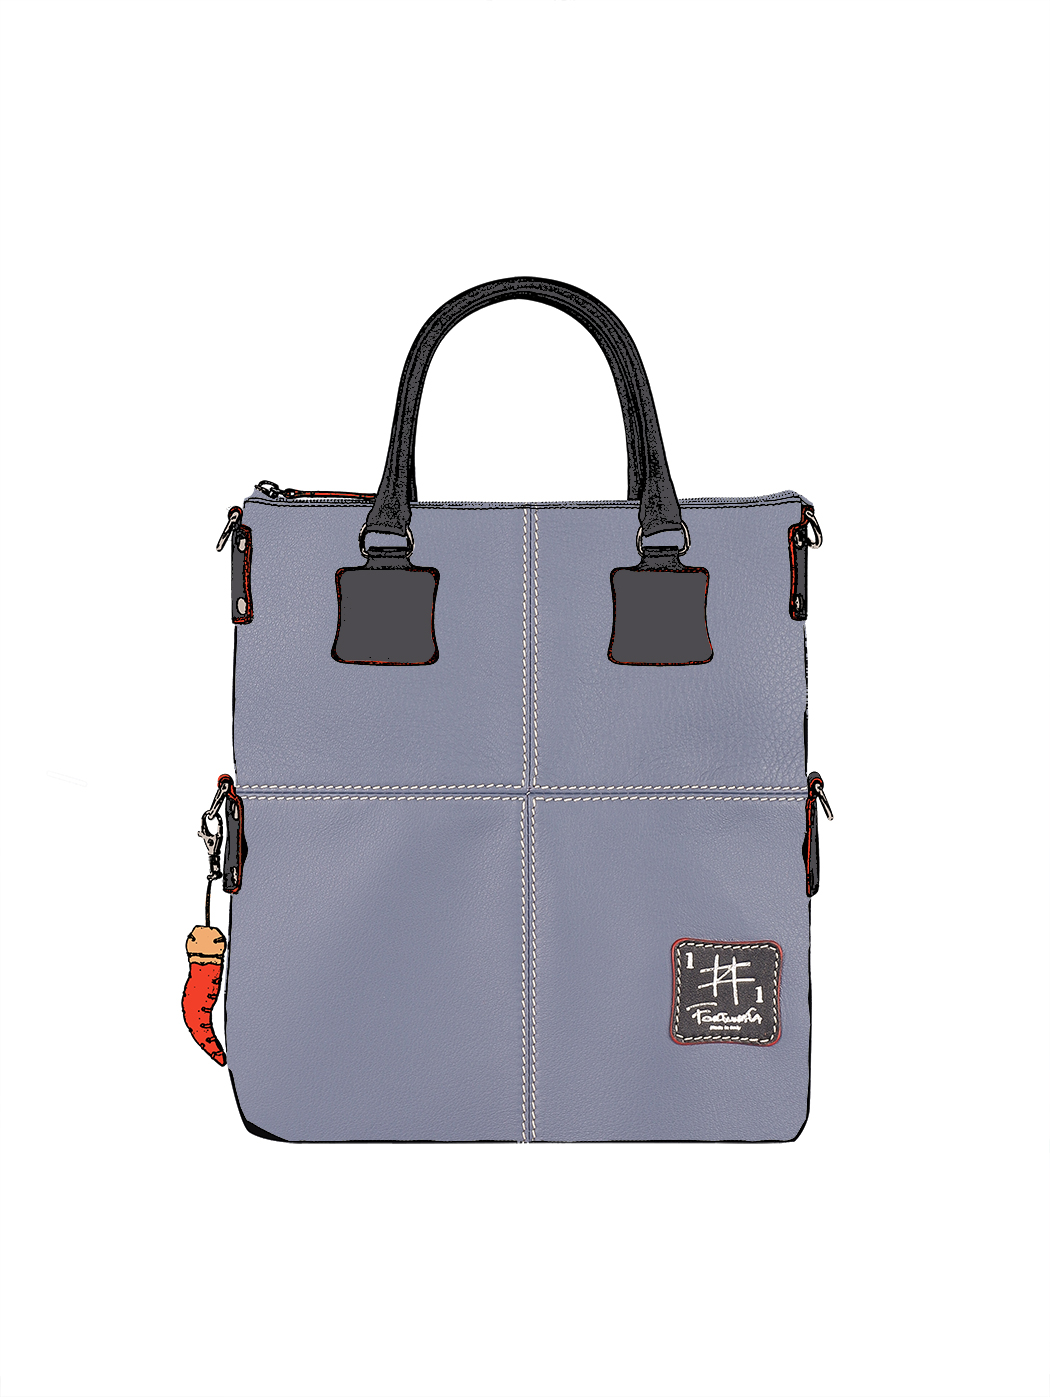 Дизайнерская сумка из коллекции Fortunata серого цвета